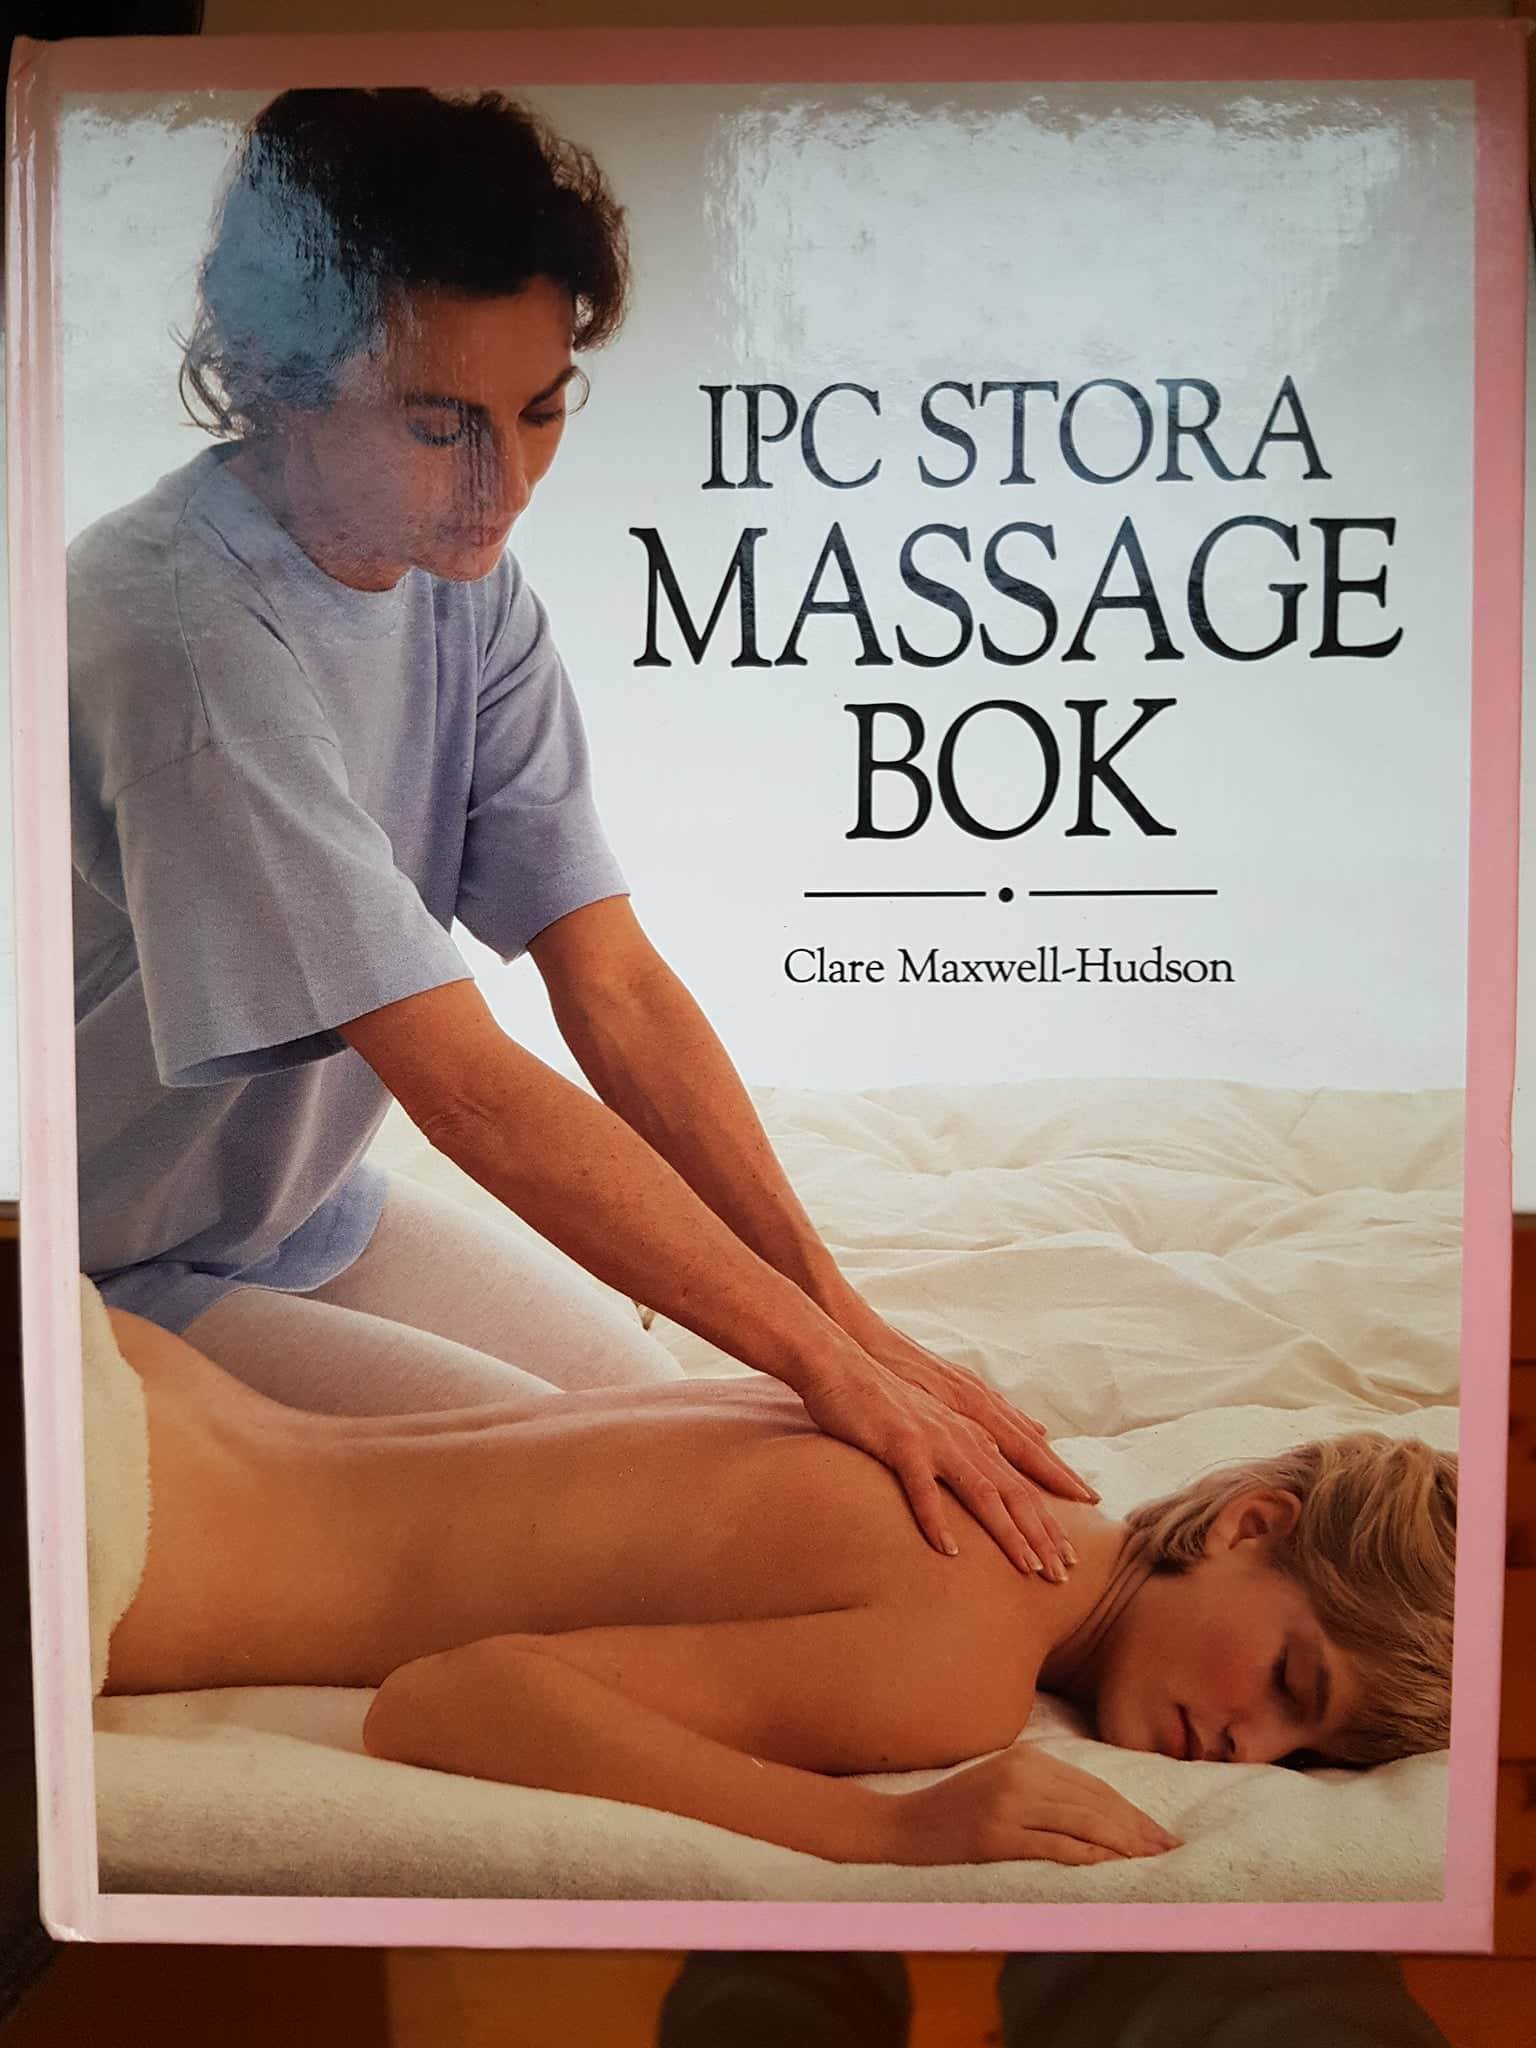 Maxwell-Hudson "IPC Stora massage bok" INBUNDEN